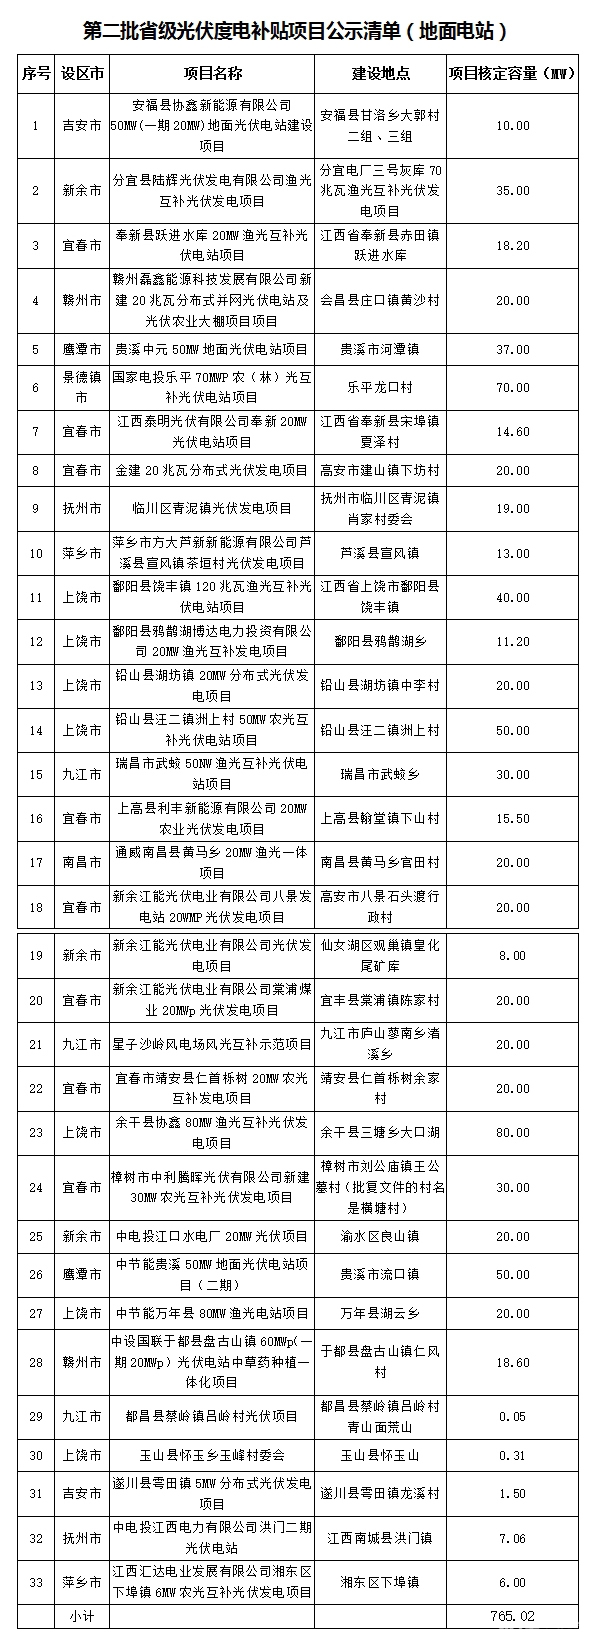 江西省第二批省级光伏度电补贴目录项目审核结果公示